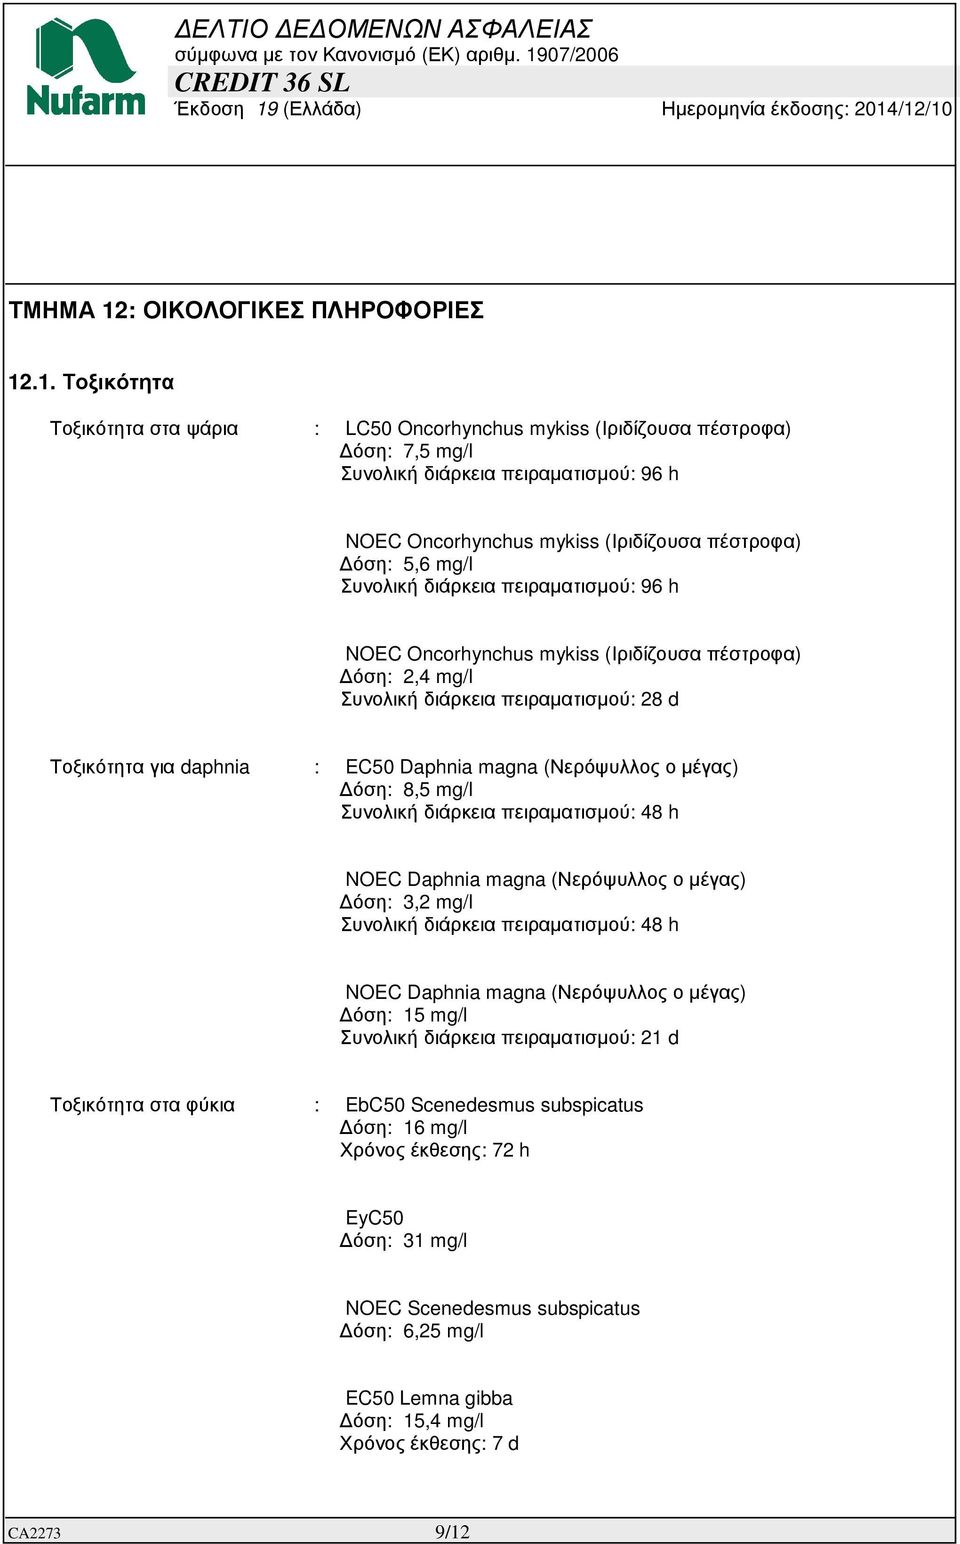 .1. Τοξικότητα Τοξικότητα στα ψάρια : LC50 Oncorhynchus mykiss (Ιριδίζουσα πέστροφα) όση: 7,5 mg/l Συνολική διάρκεια πειραµατισµού: 96 h NOEC Oncorhynchus mykiss (Ιριδίζουσα πέστροφα) όση: 5,6 mg/l